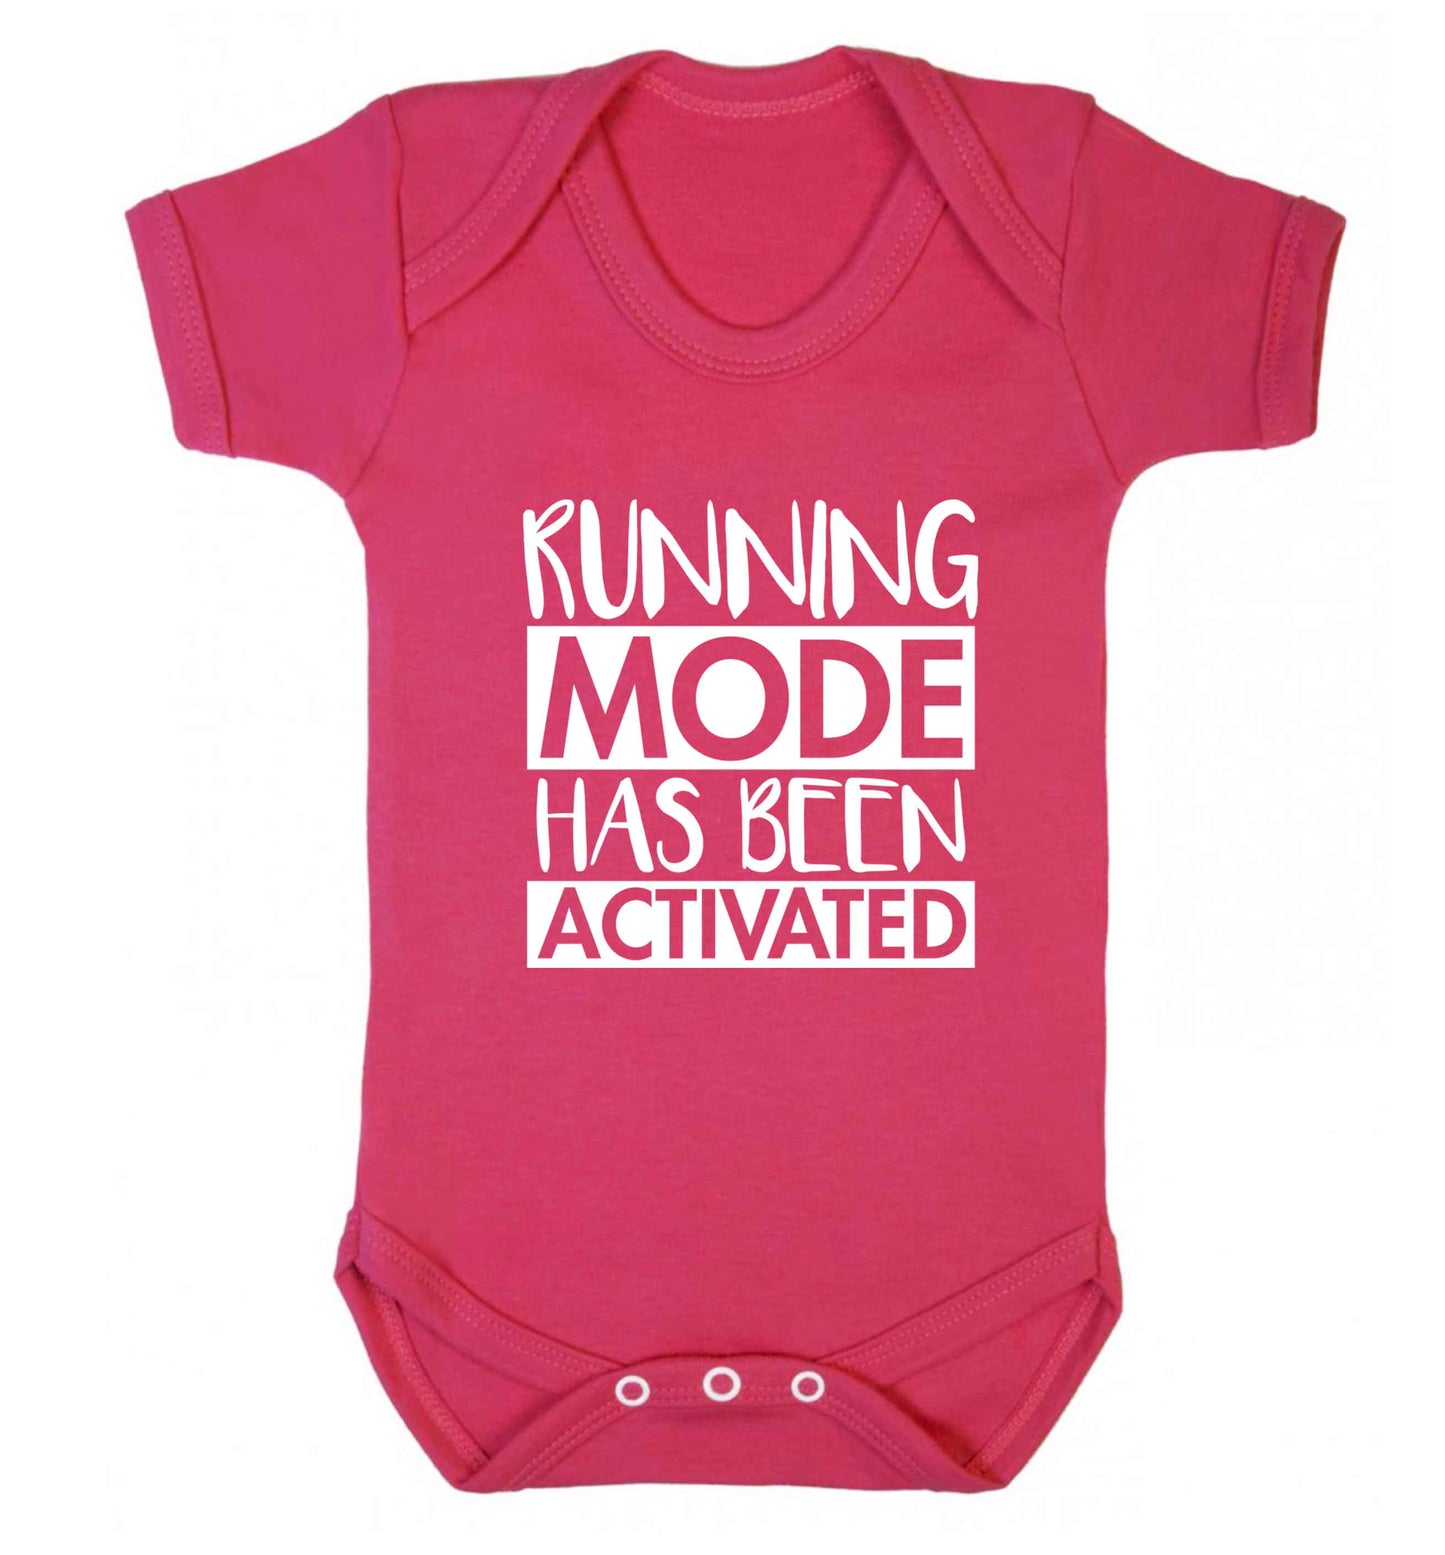 Running mode has been activated baby vest dark pink 18-24 months